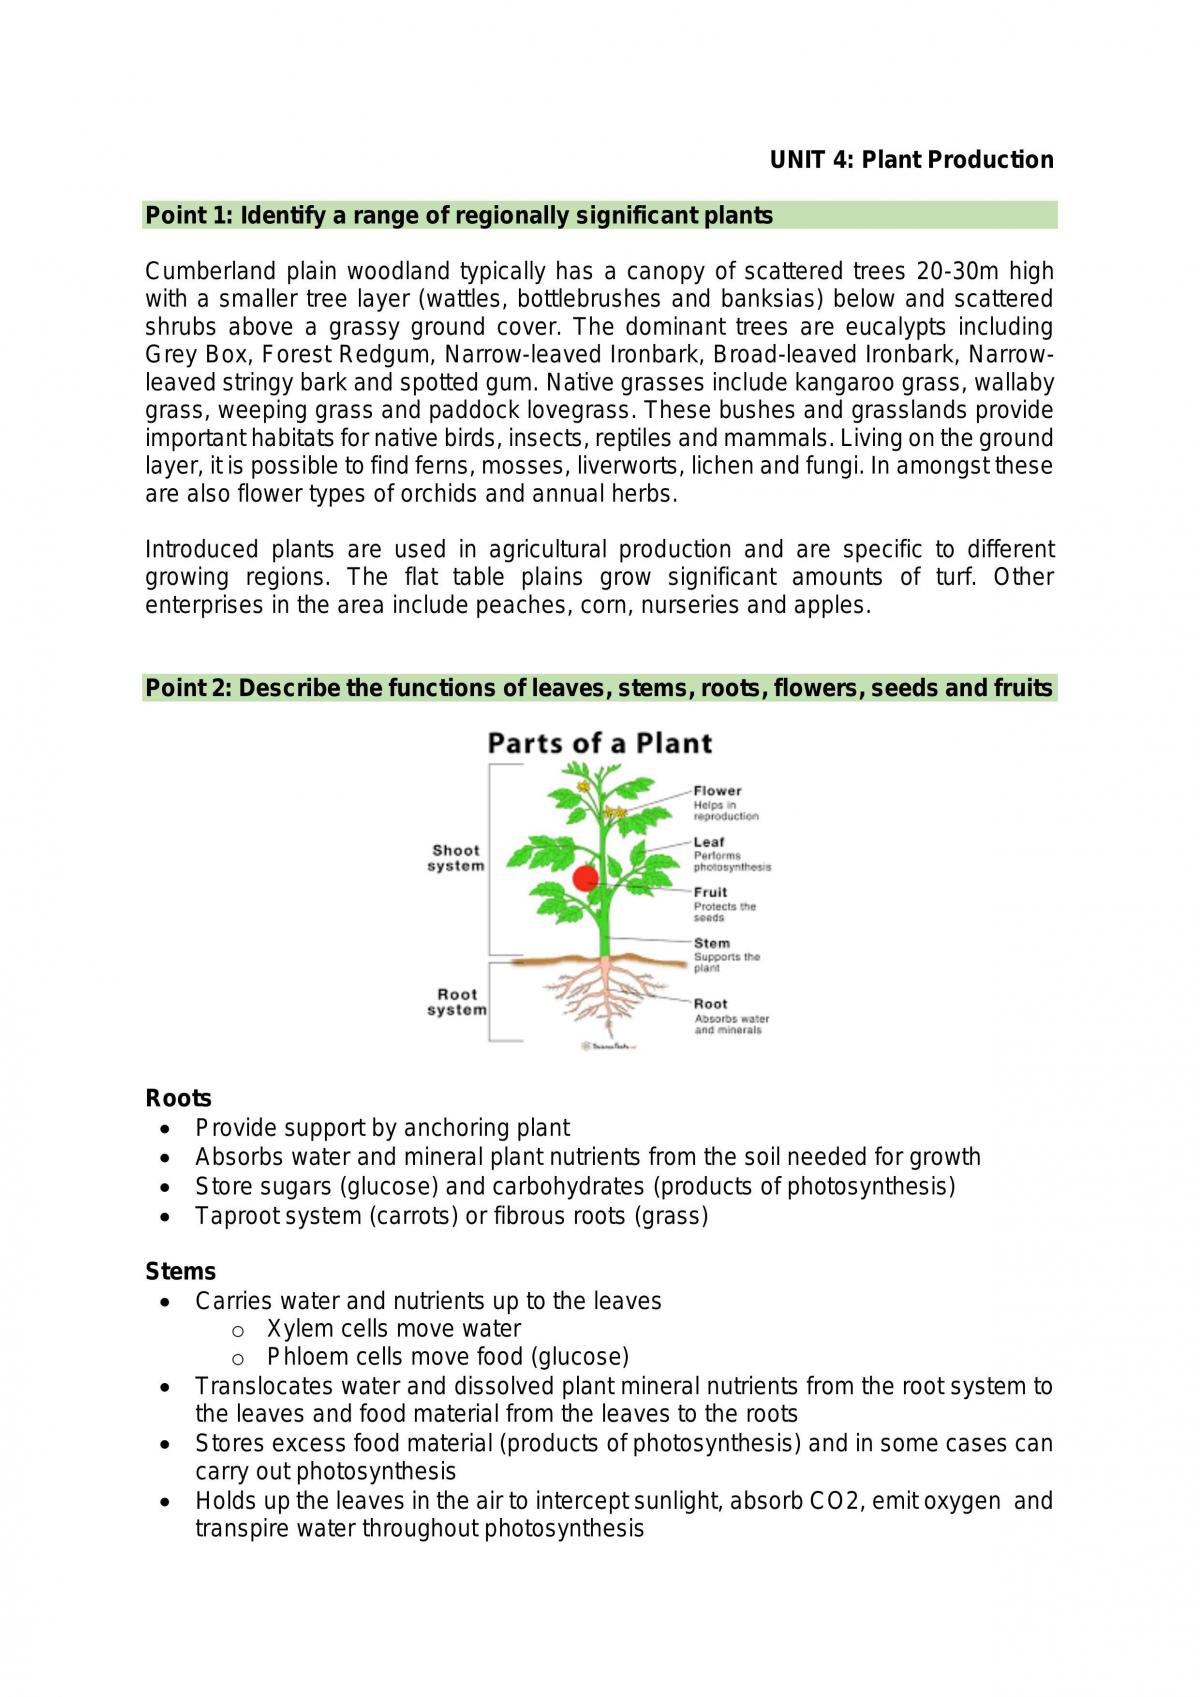 Unit 4: Plant Production Notes - Page 1